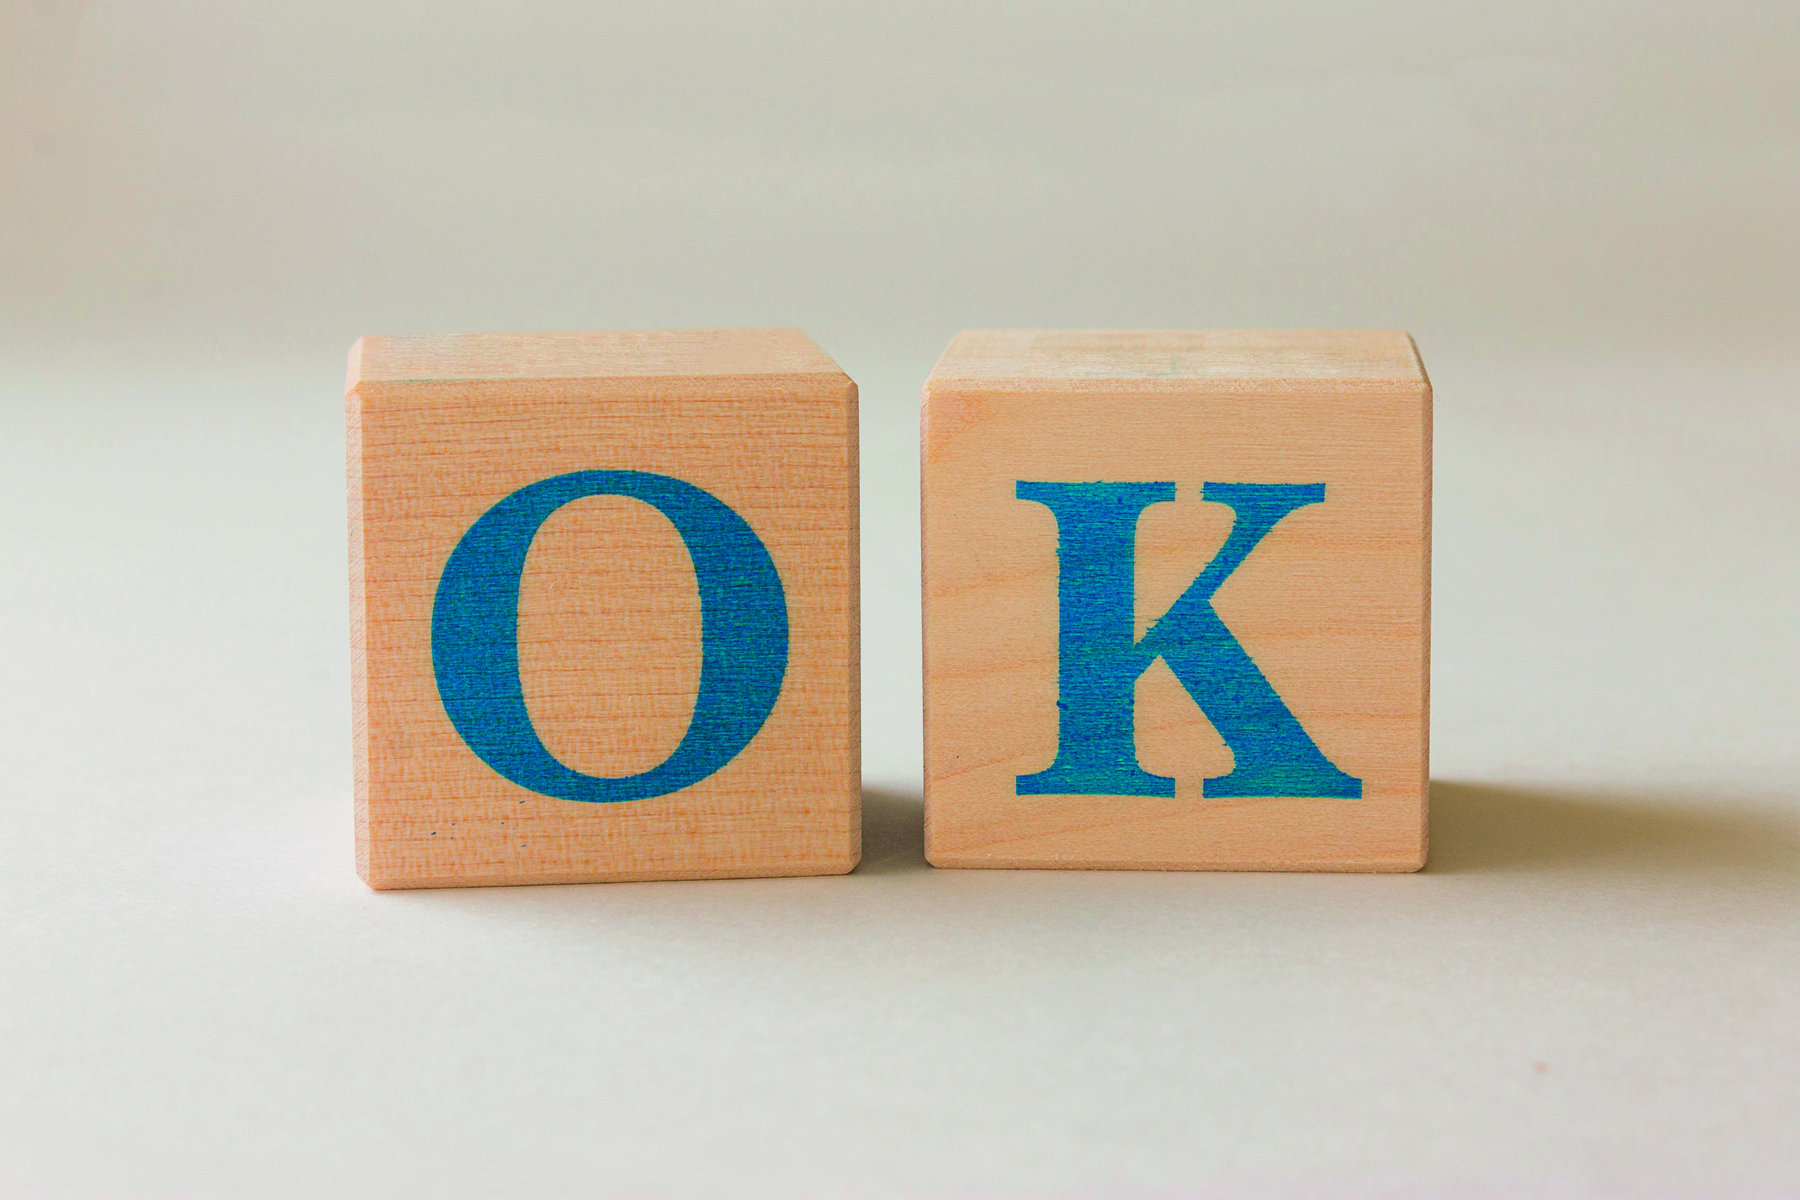 Fotografia. Dois cubos de madeira em bege, cada um com uma letra em azul, formando a palavra: OK.